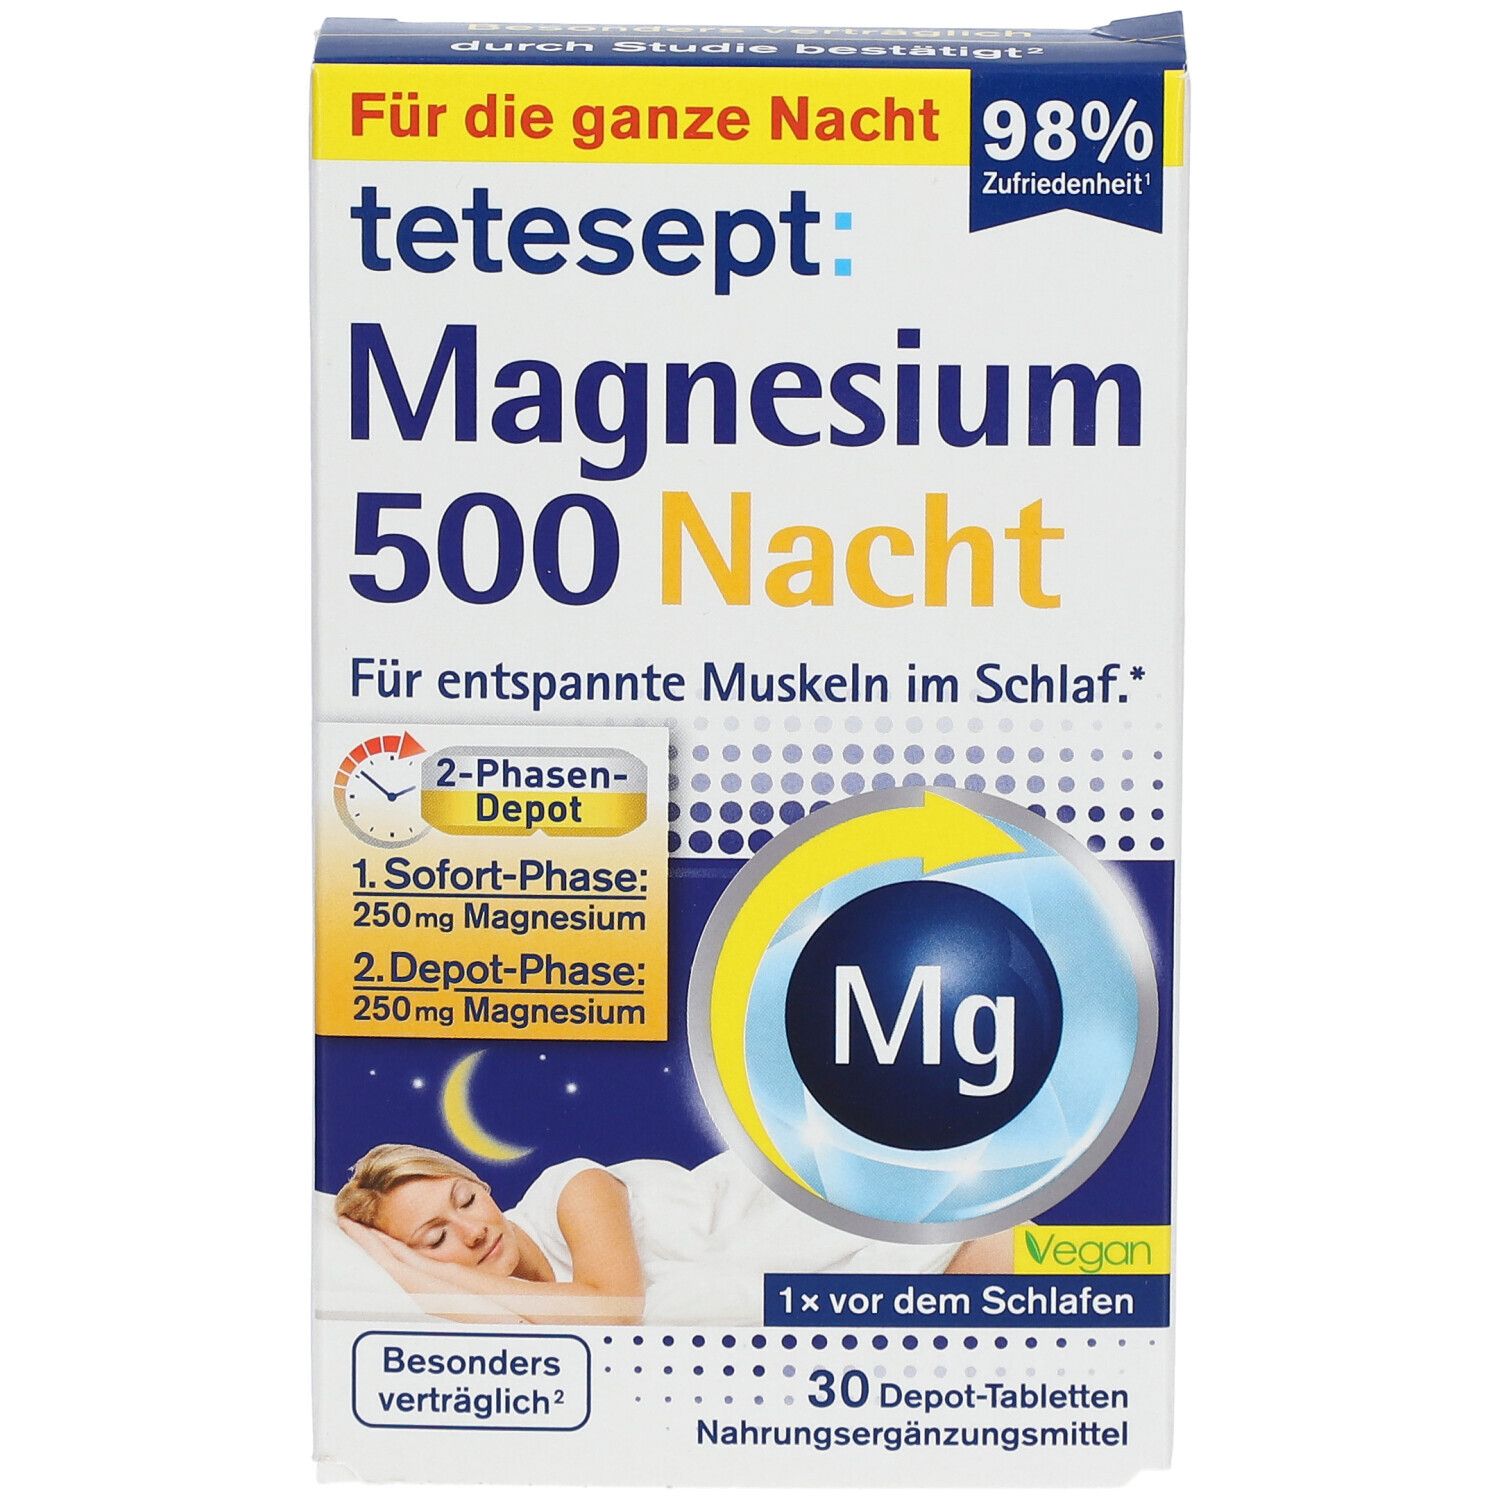 tetesept® Magnesium 500 Nacht